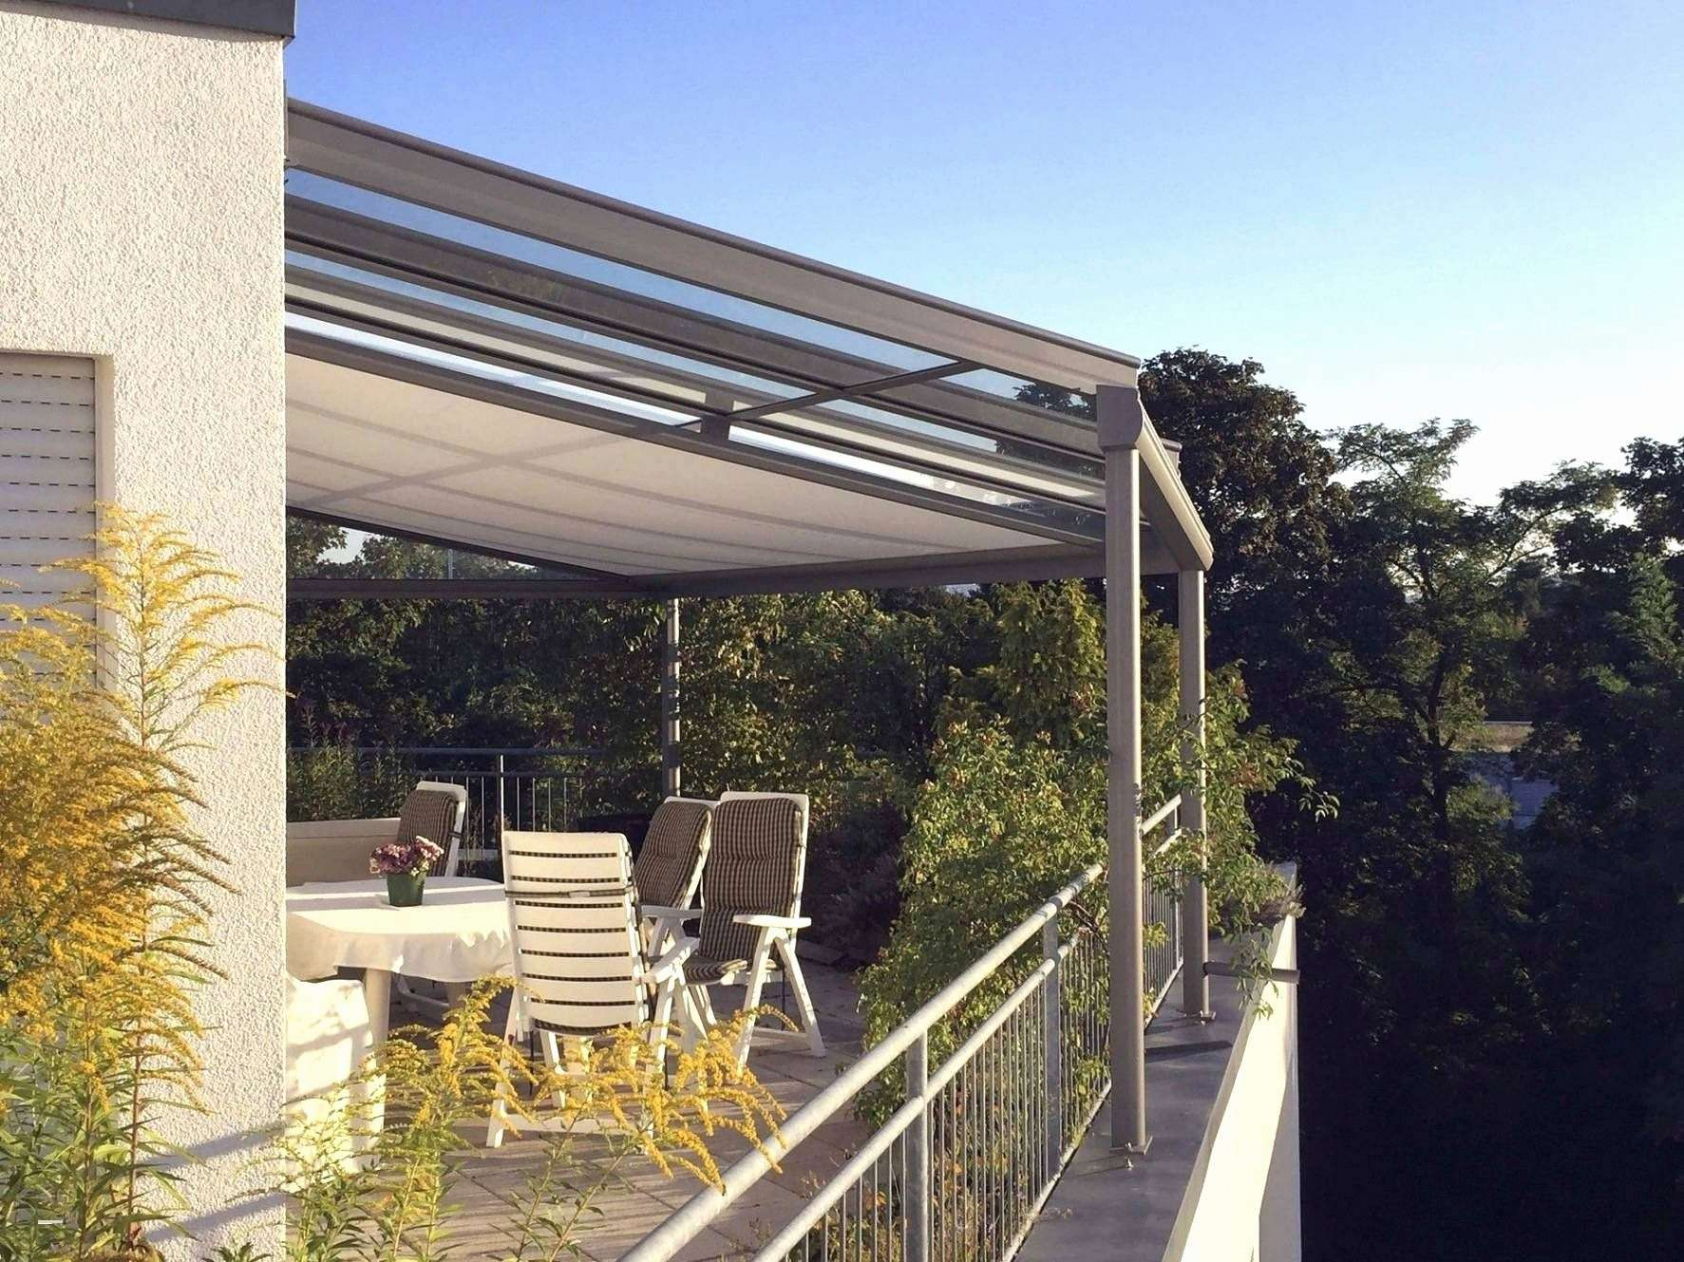 Garten Ideen Günstig Inspirierend Terrasse Blickdicht Machen — Temobardz Home Blog